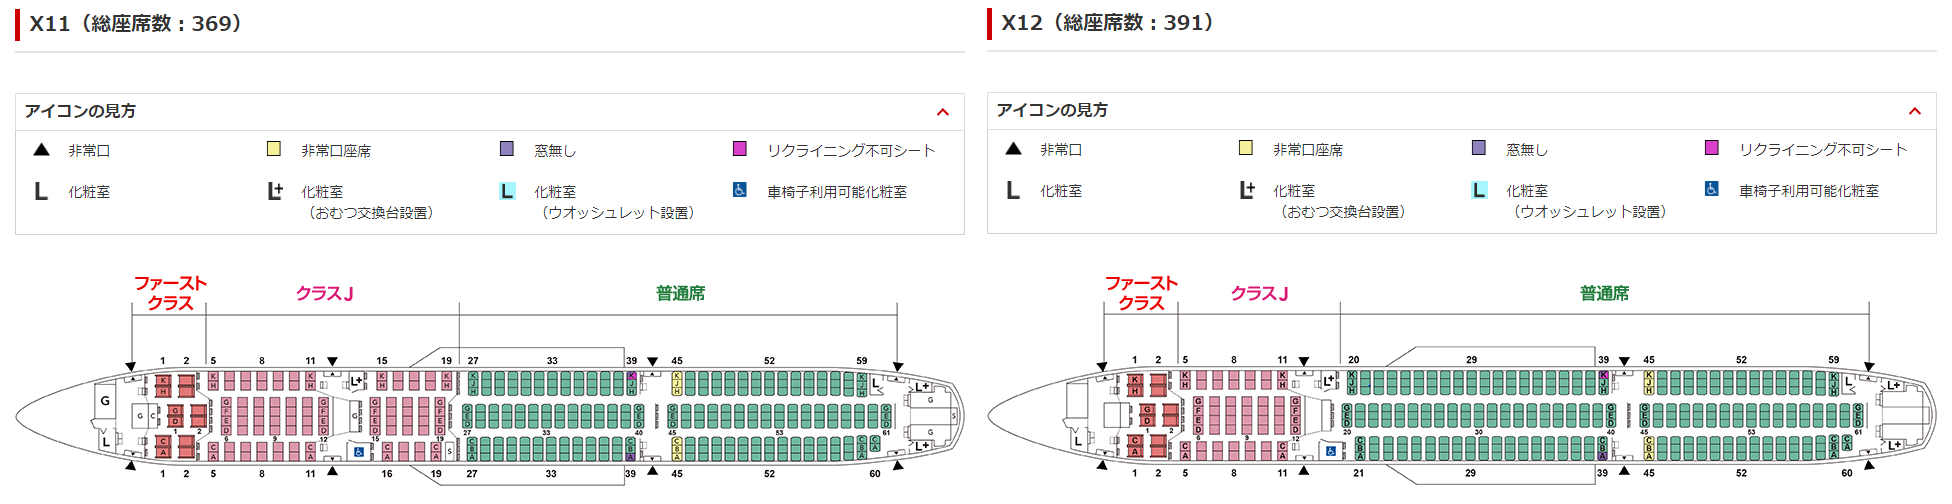 JALの国内線用A350-900型機の座席表